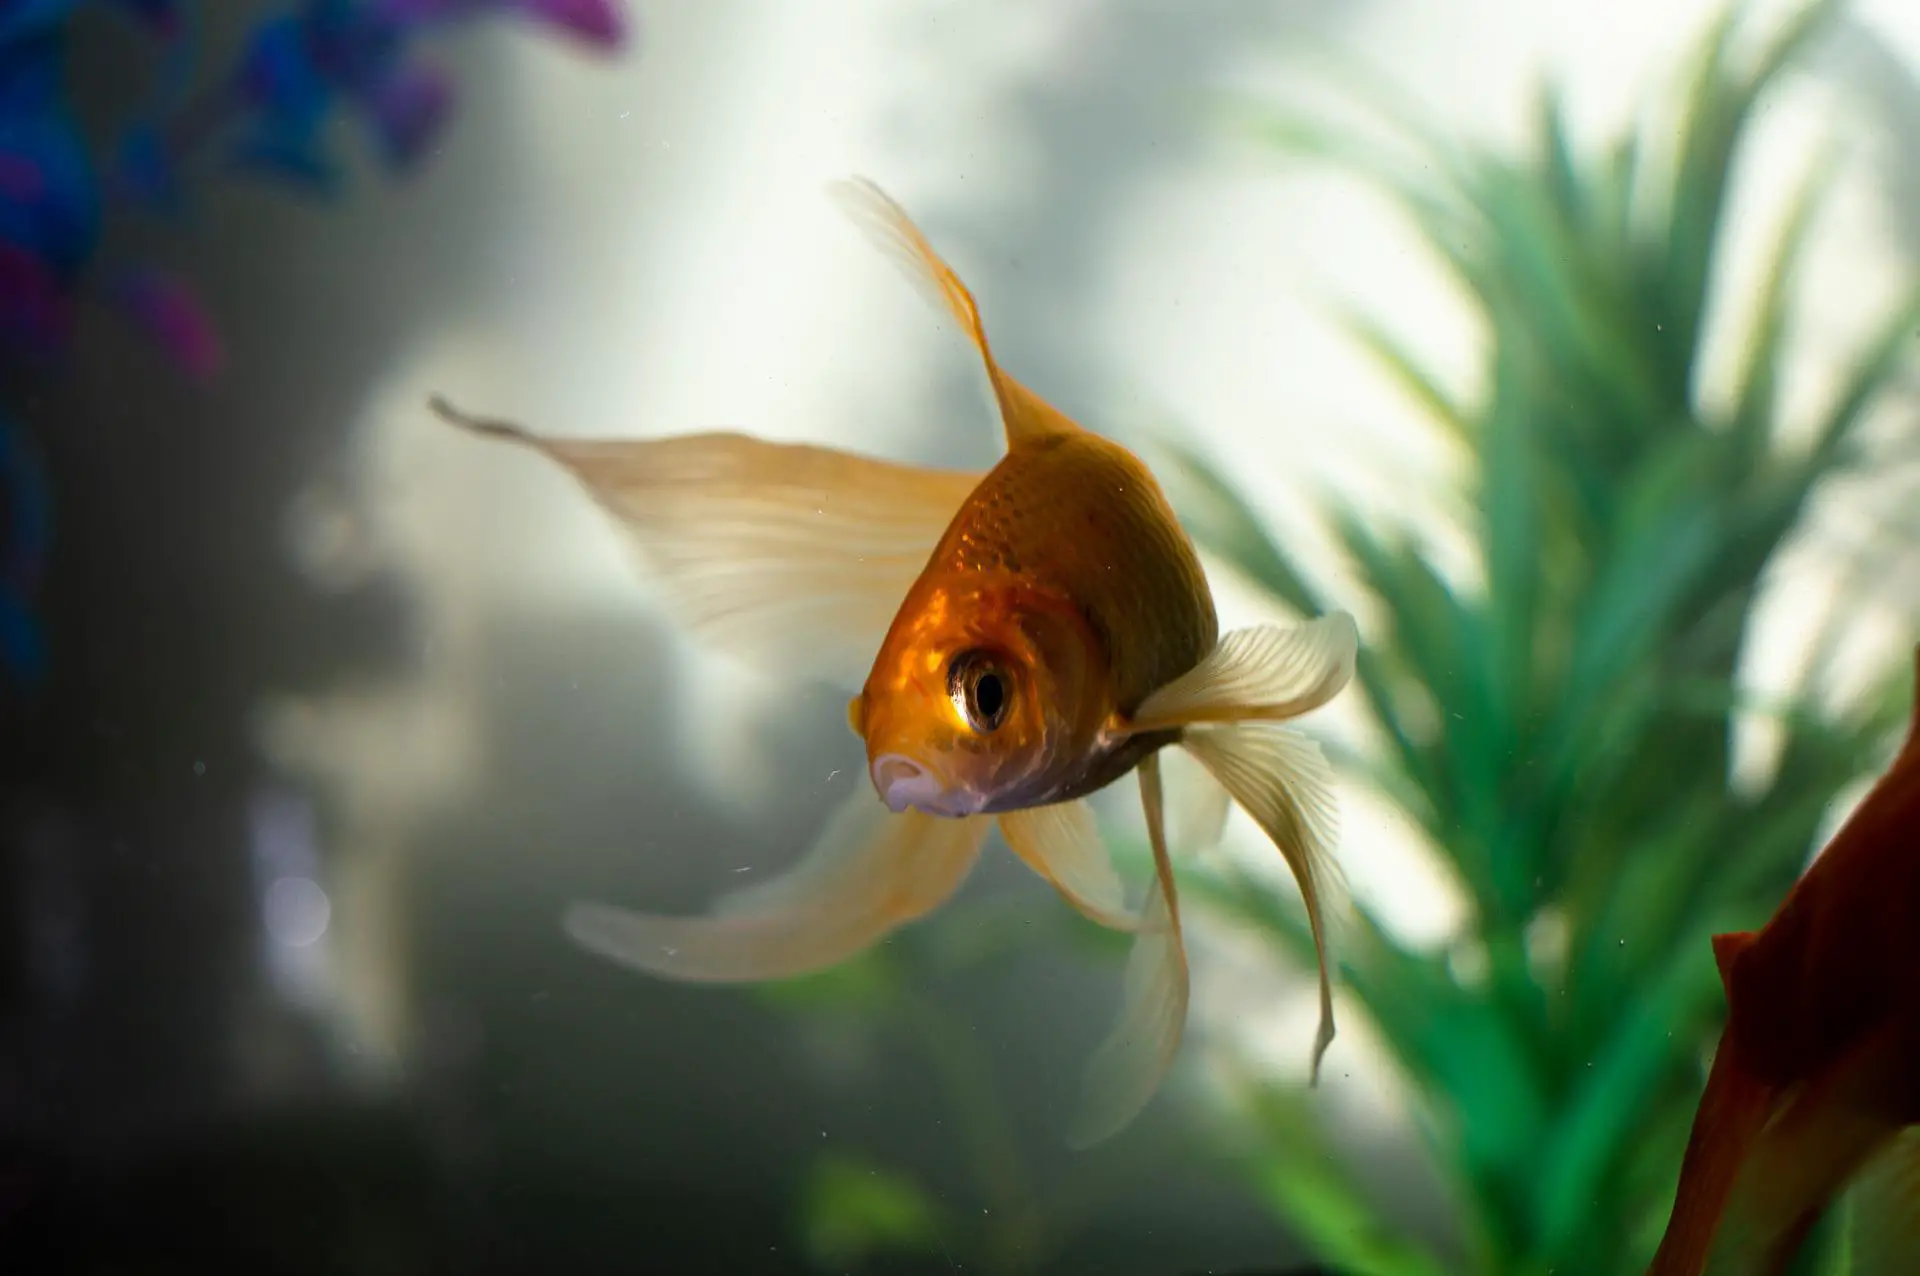 Common Dreams Involving Goldfish